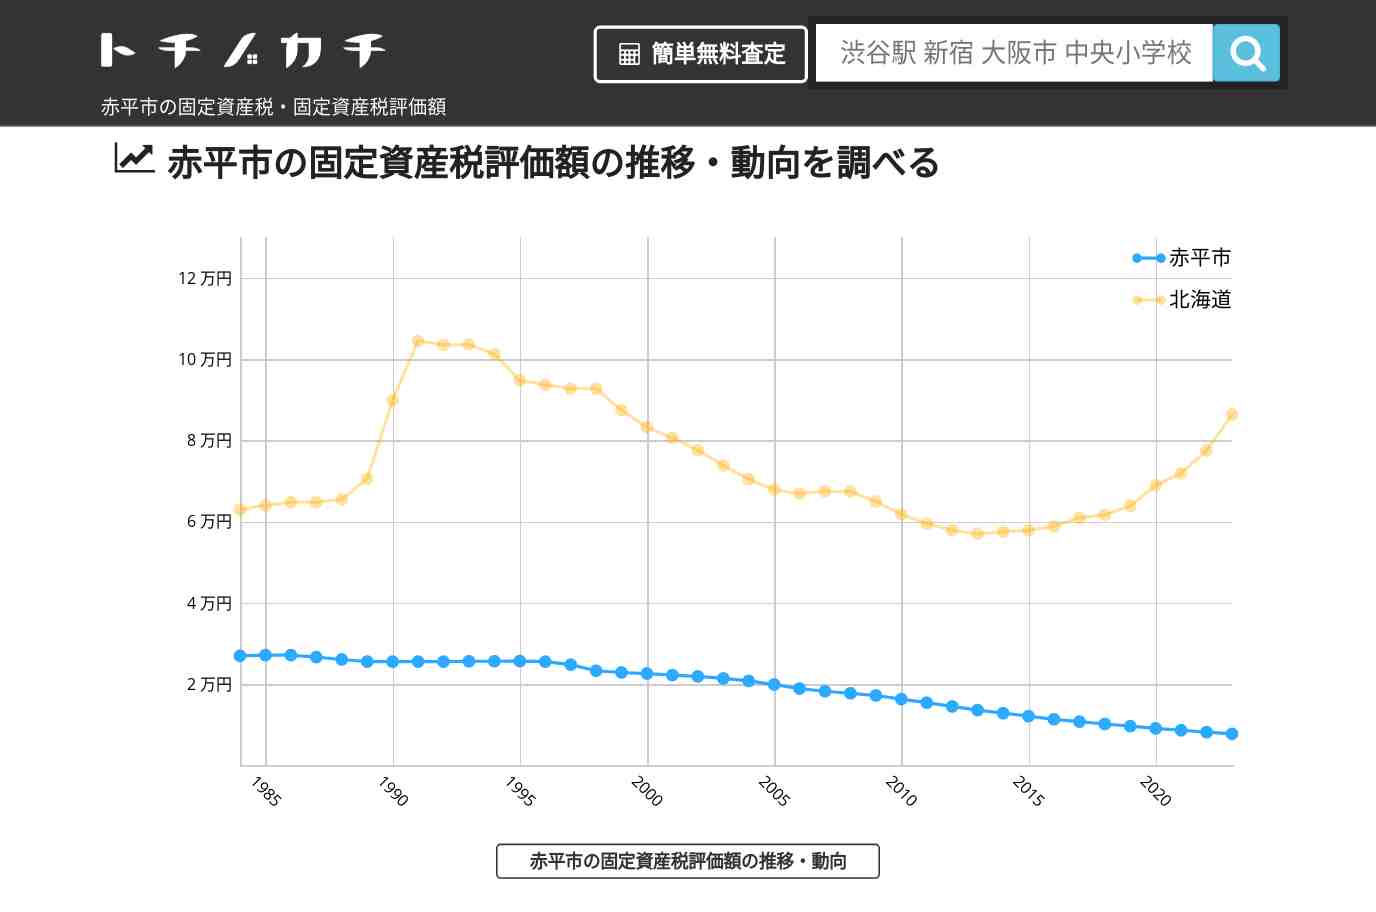 赤間小学校(北海道 赤平市)周辺の固定資産税・固定資産税評価額 | トチノカチ